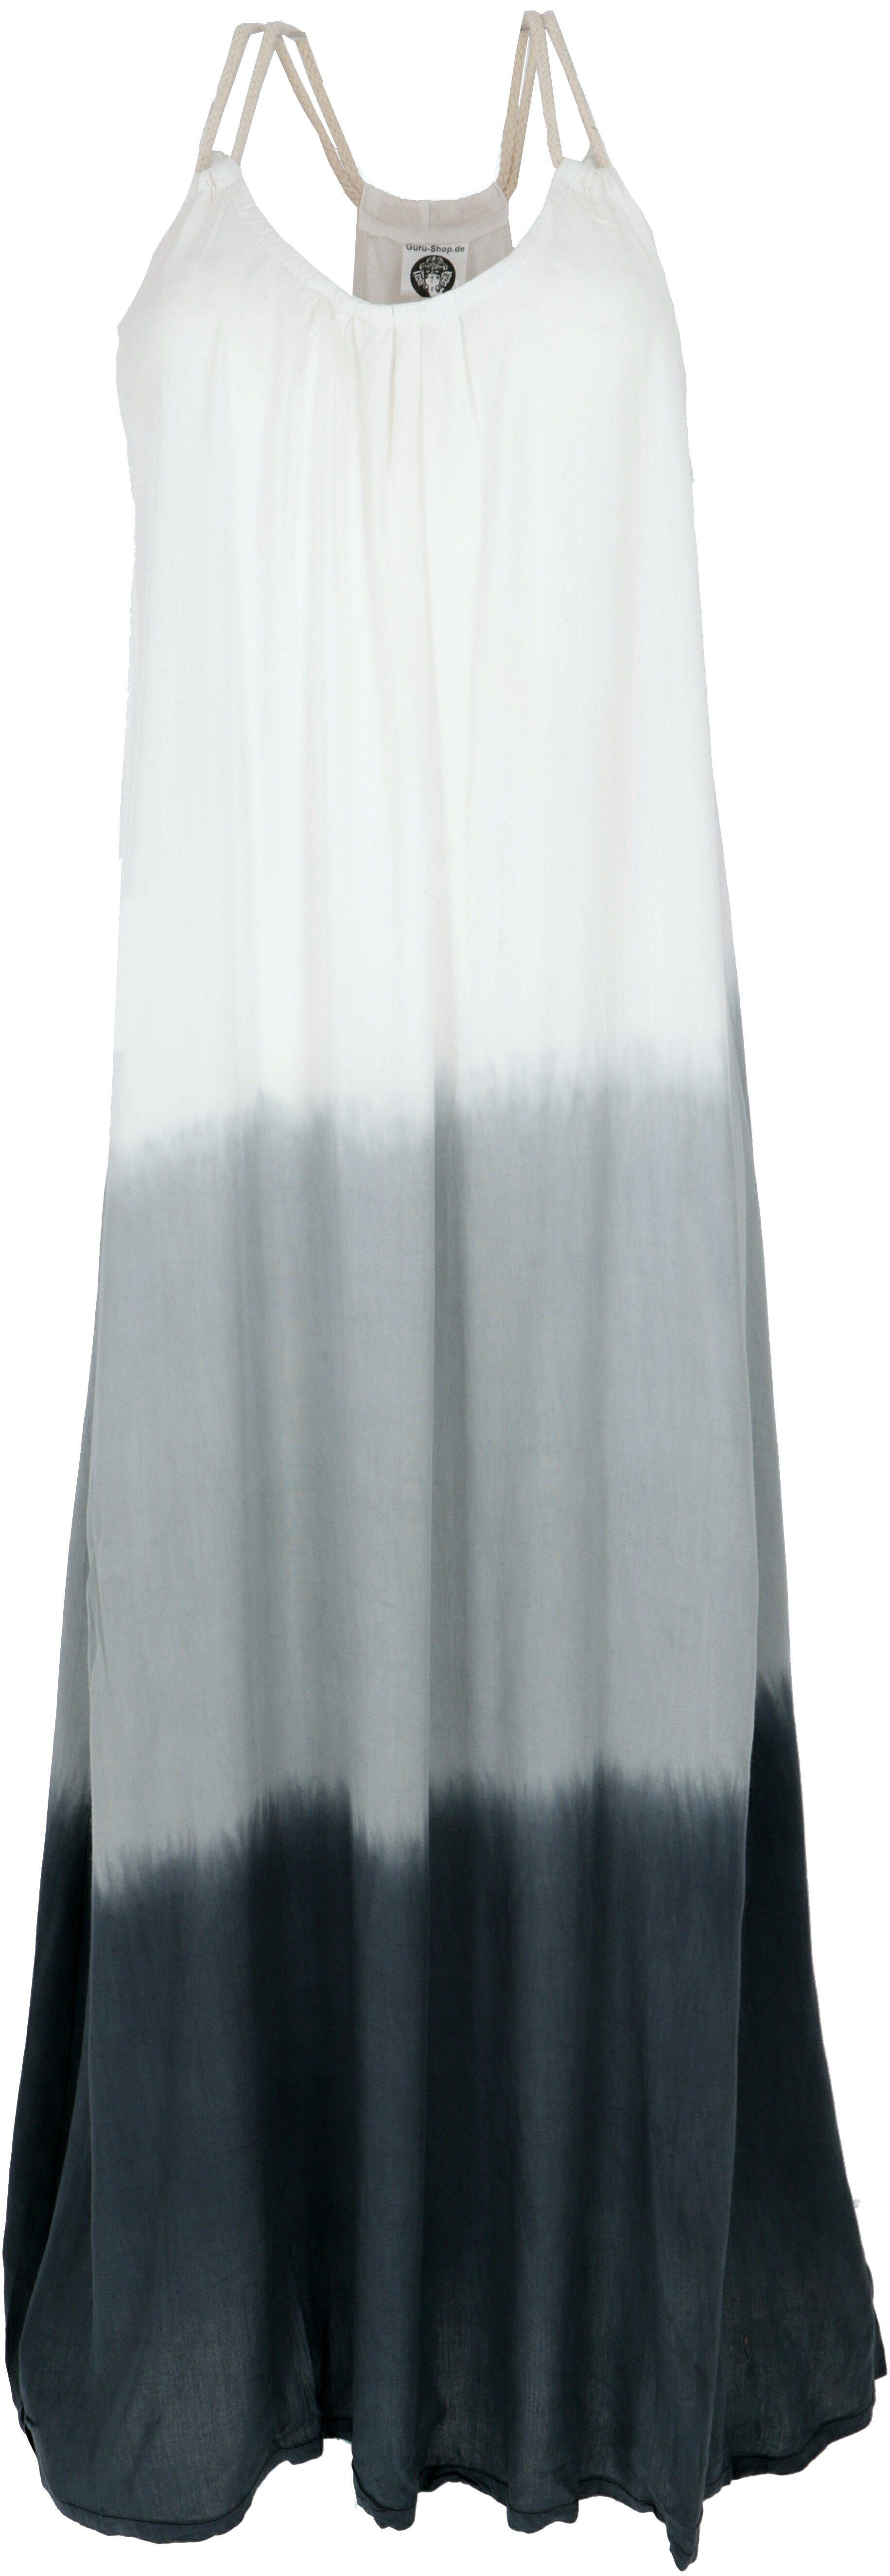 Guru-Shop Midikleid Schmales Batikkleid, Strandkleid, Sommerkleid -.. alternative Bekleidung schwarz/weiß